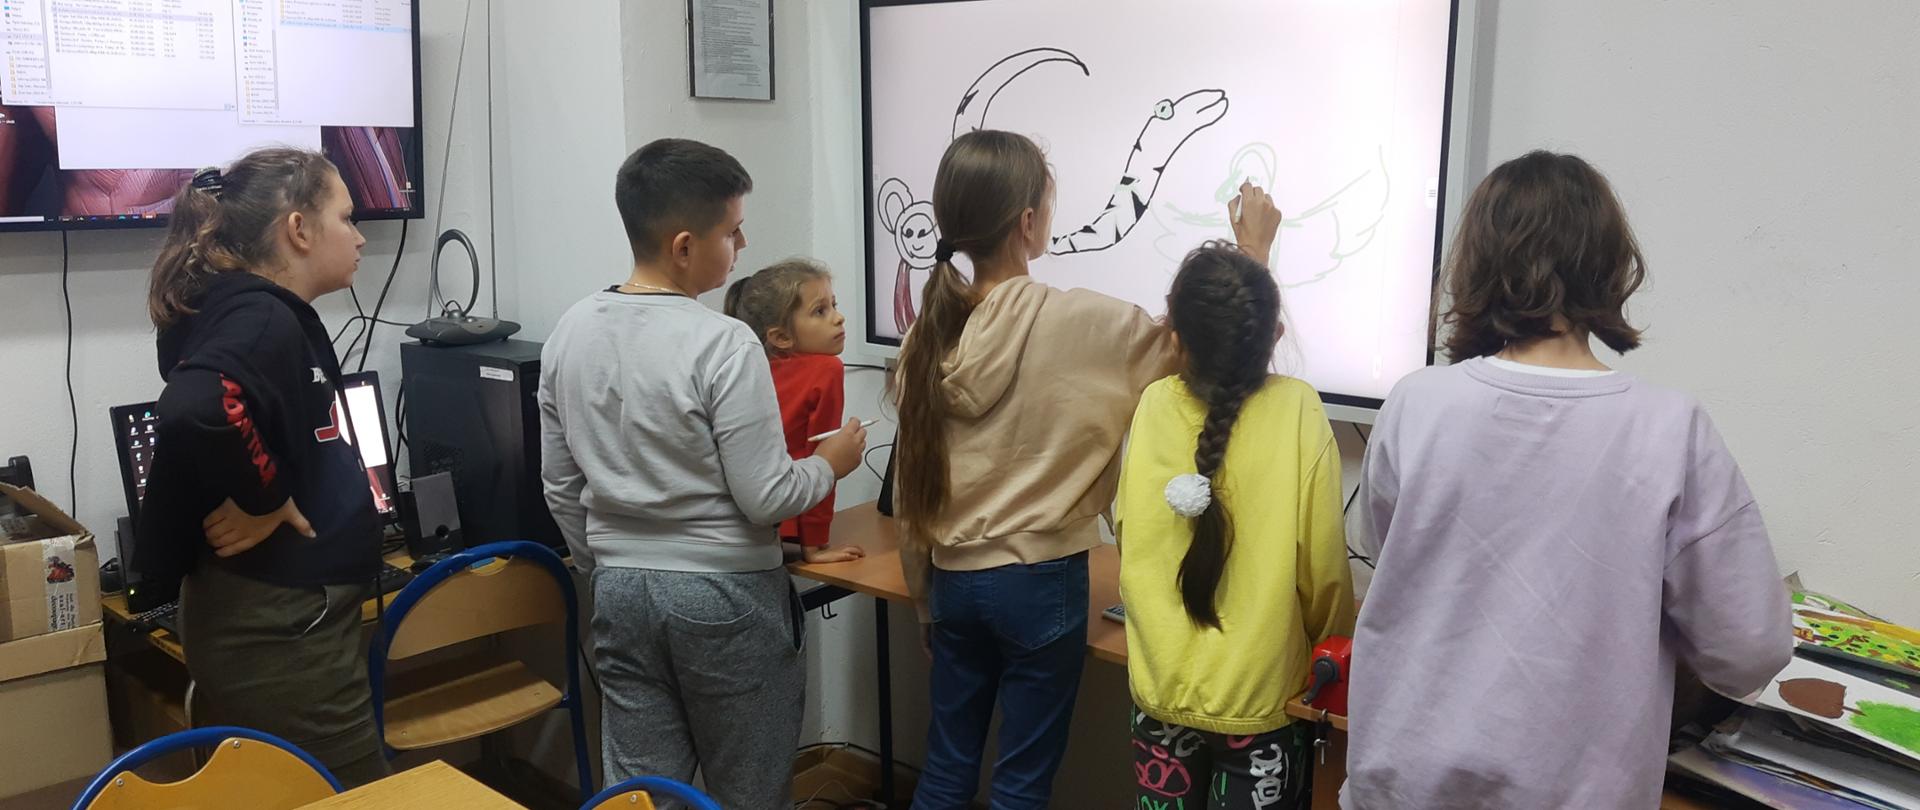 Na zdjęciu dzieci z Ukrainy rysują na nowym monitorze interaktywnym, dziewczynka z długimi włosami spiętymi w kucyk ma w dłoni specjalny rysik, pozostałe dzieci z zainteresowaniem przyglądają się procesowi tworzenia w nowej technologii. 